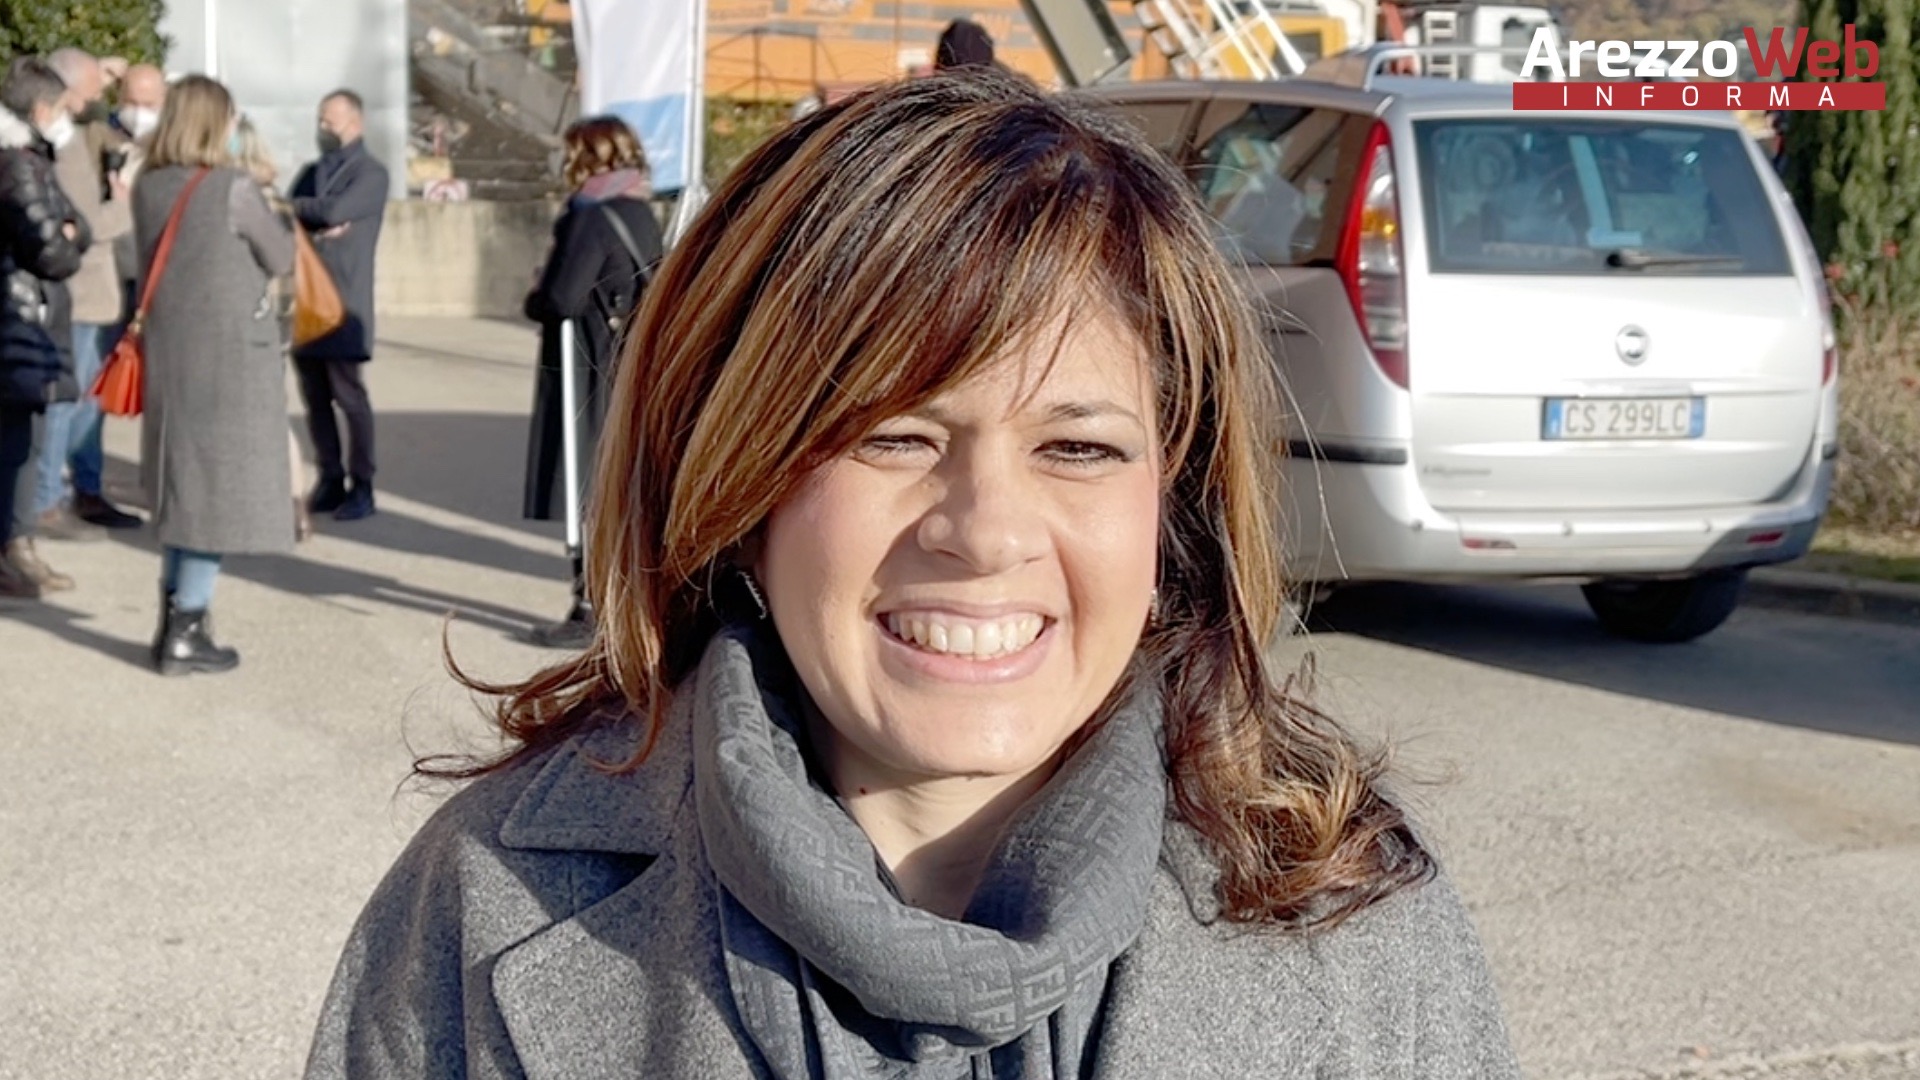 Chiara Legnaioli